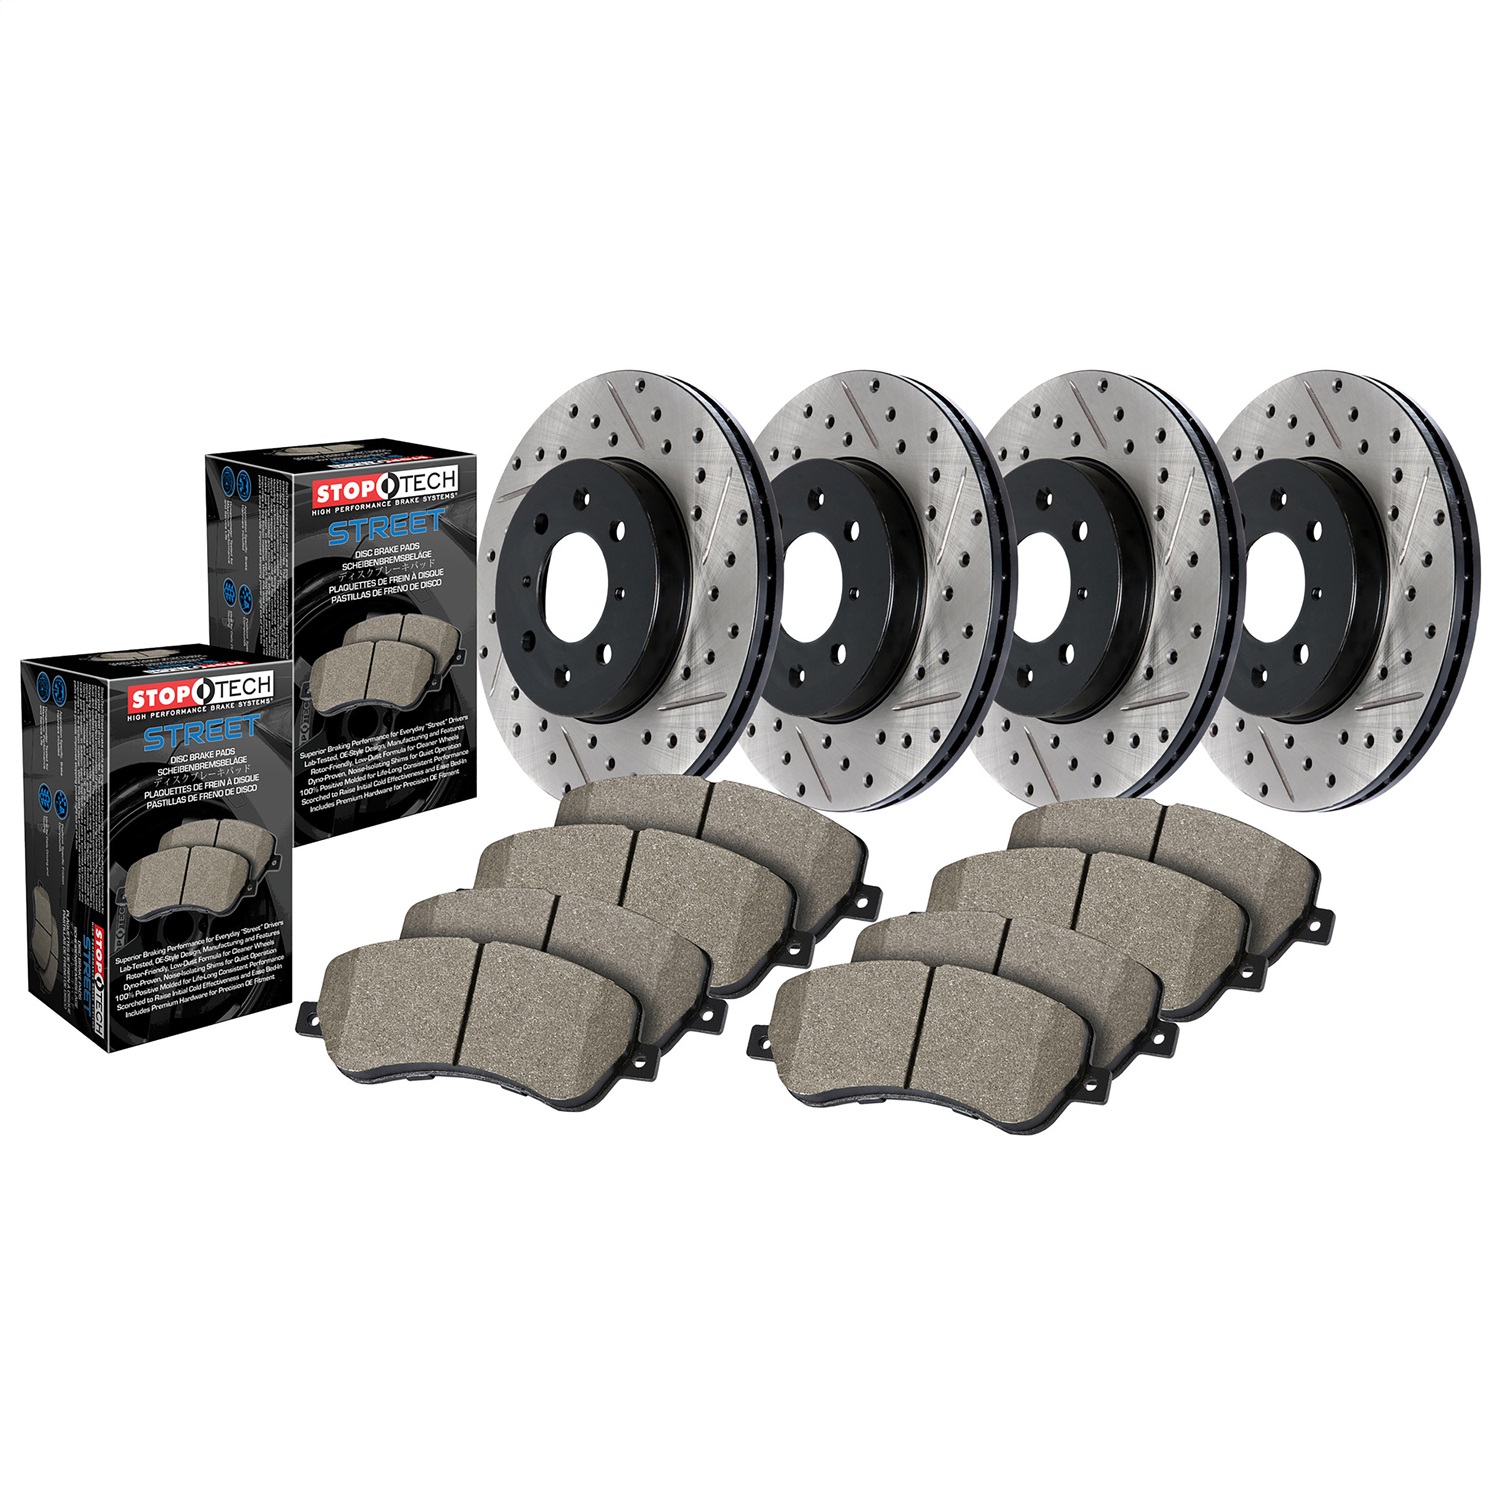 StopTech 935.40088 Disc Brake Upgrade Kit